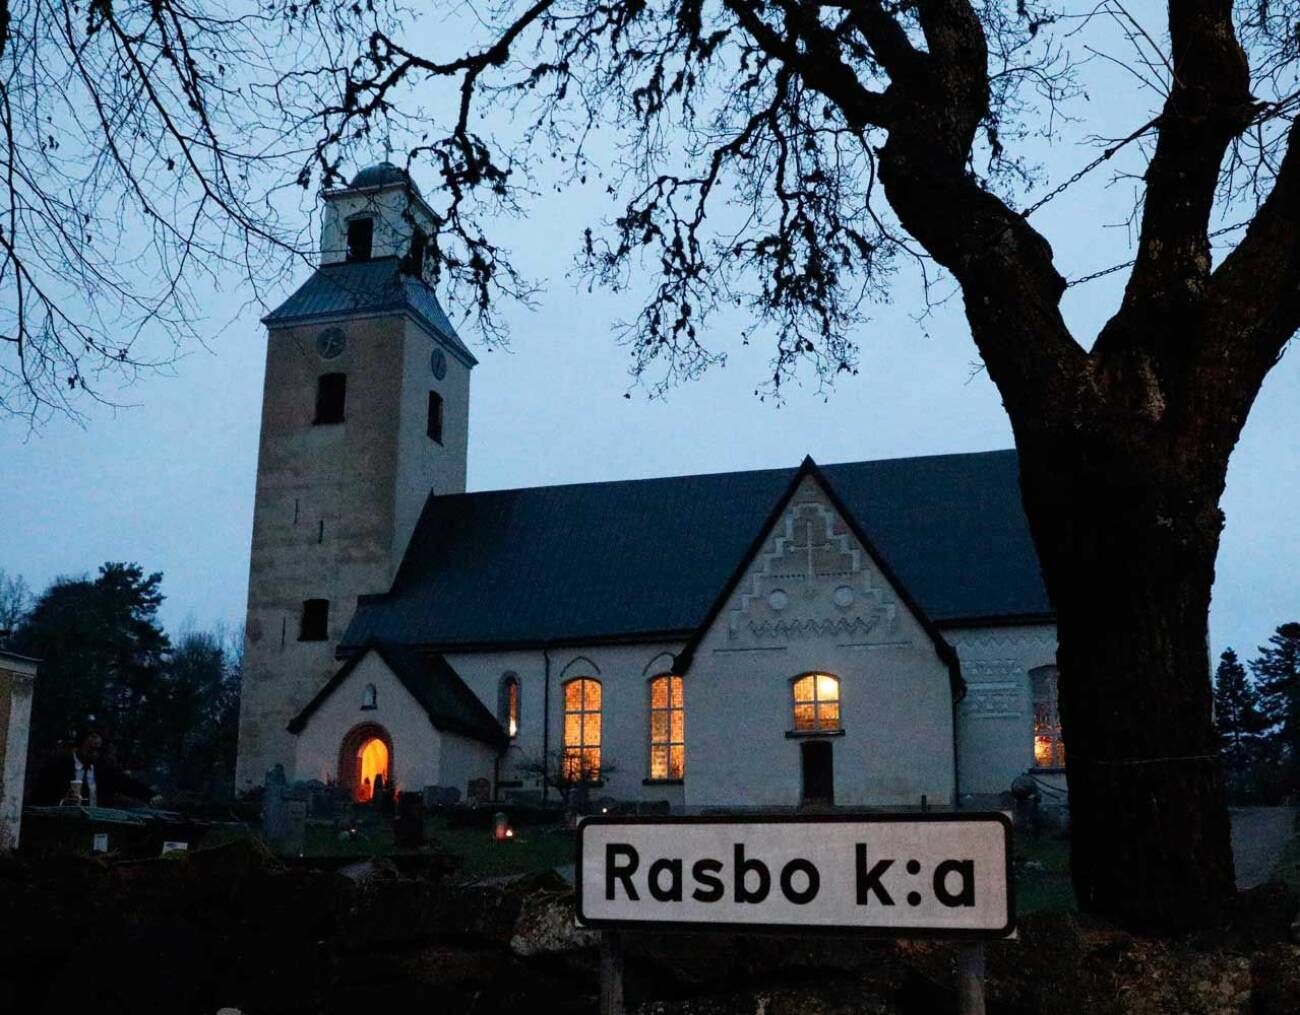 Oscar Oscis Bernadottes begravning ägde rum i Rasbo kyrka strax utanför Uppsala.